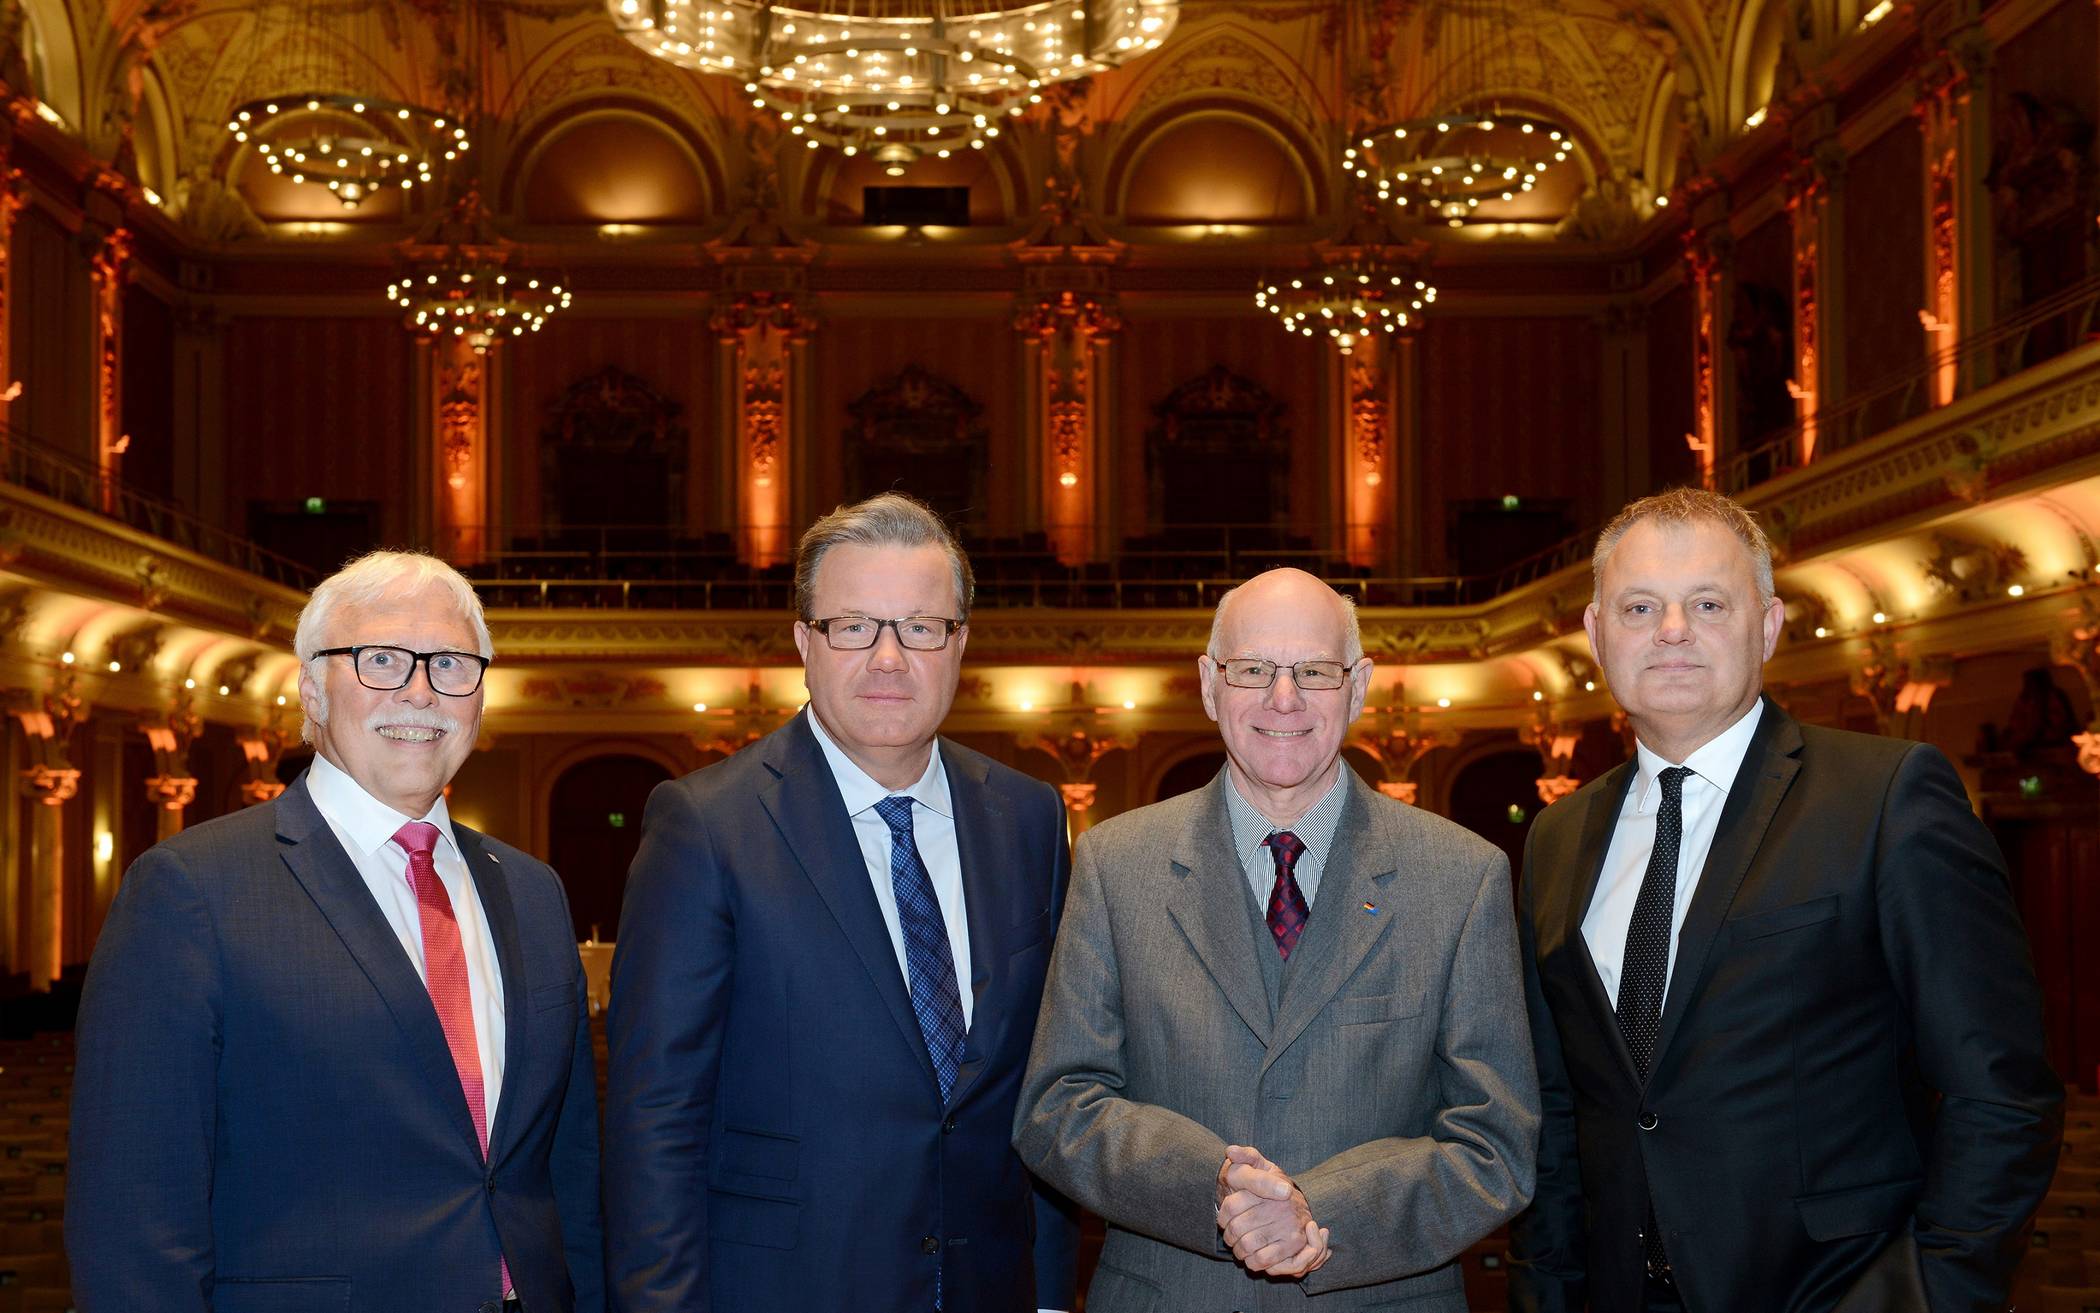  Norbert Lammert (M.) war der Redner beim diesjährigen Volksbank-Symposium. Die Vorstände Andreas Otto (r.) und Lutz Uwe Magney (l.) sowie Aufsichtsratsvorsitzender Thomas Schäfer (2.v.l.) begrüßten ihn in der Historischen Stadthalle. 